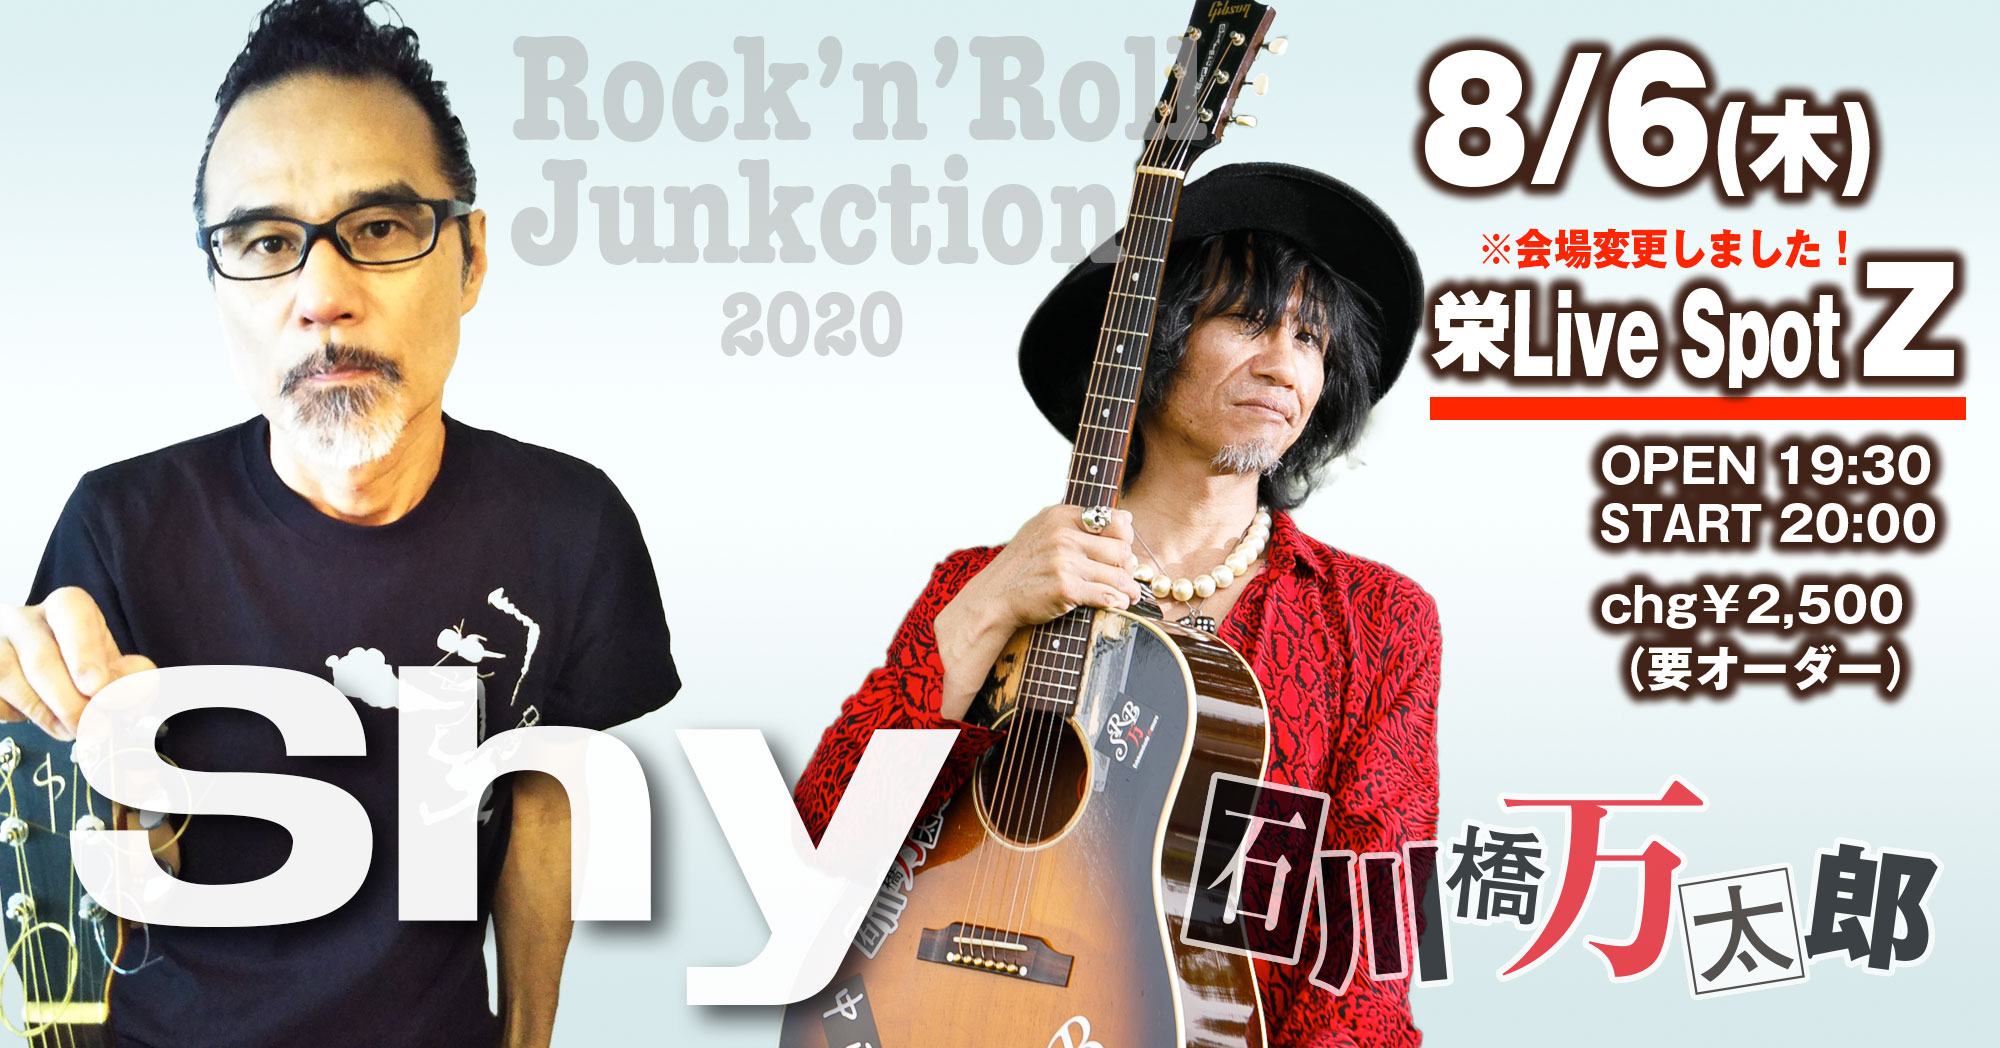 Shy & 石川橋万太郎 Rock'n'Roll Junction2020 @ Live Spot Z